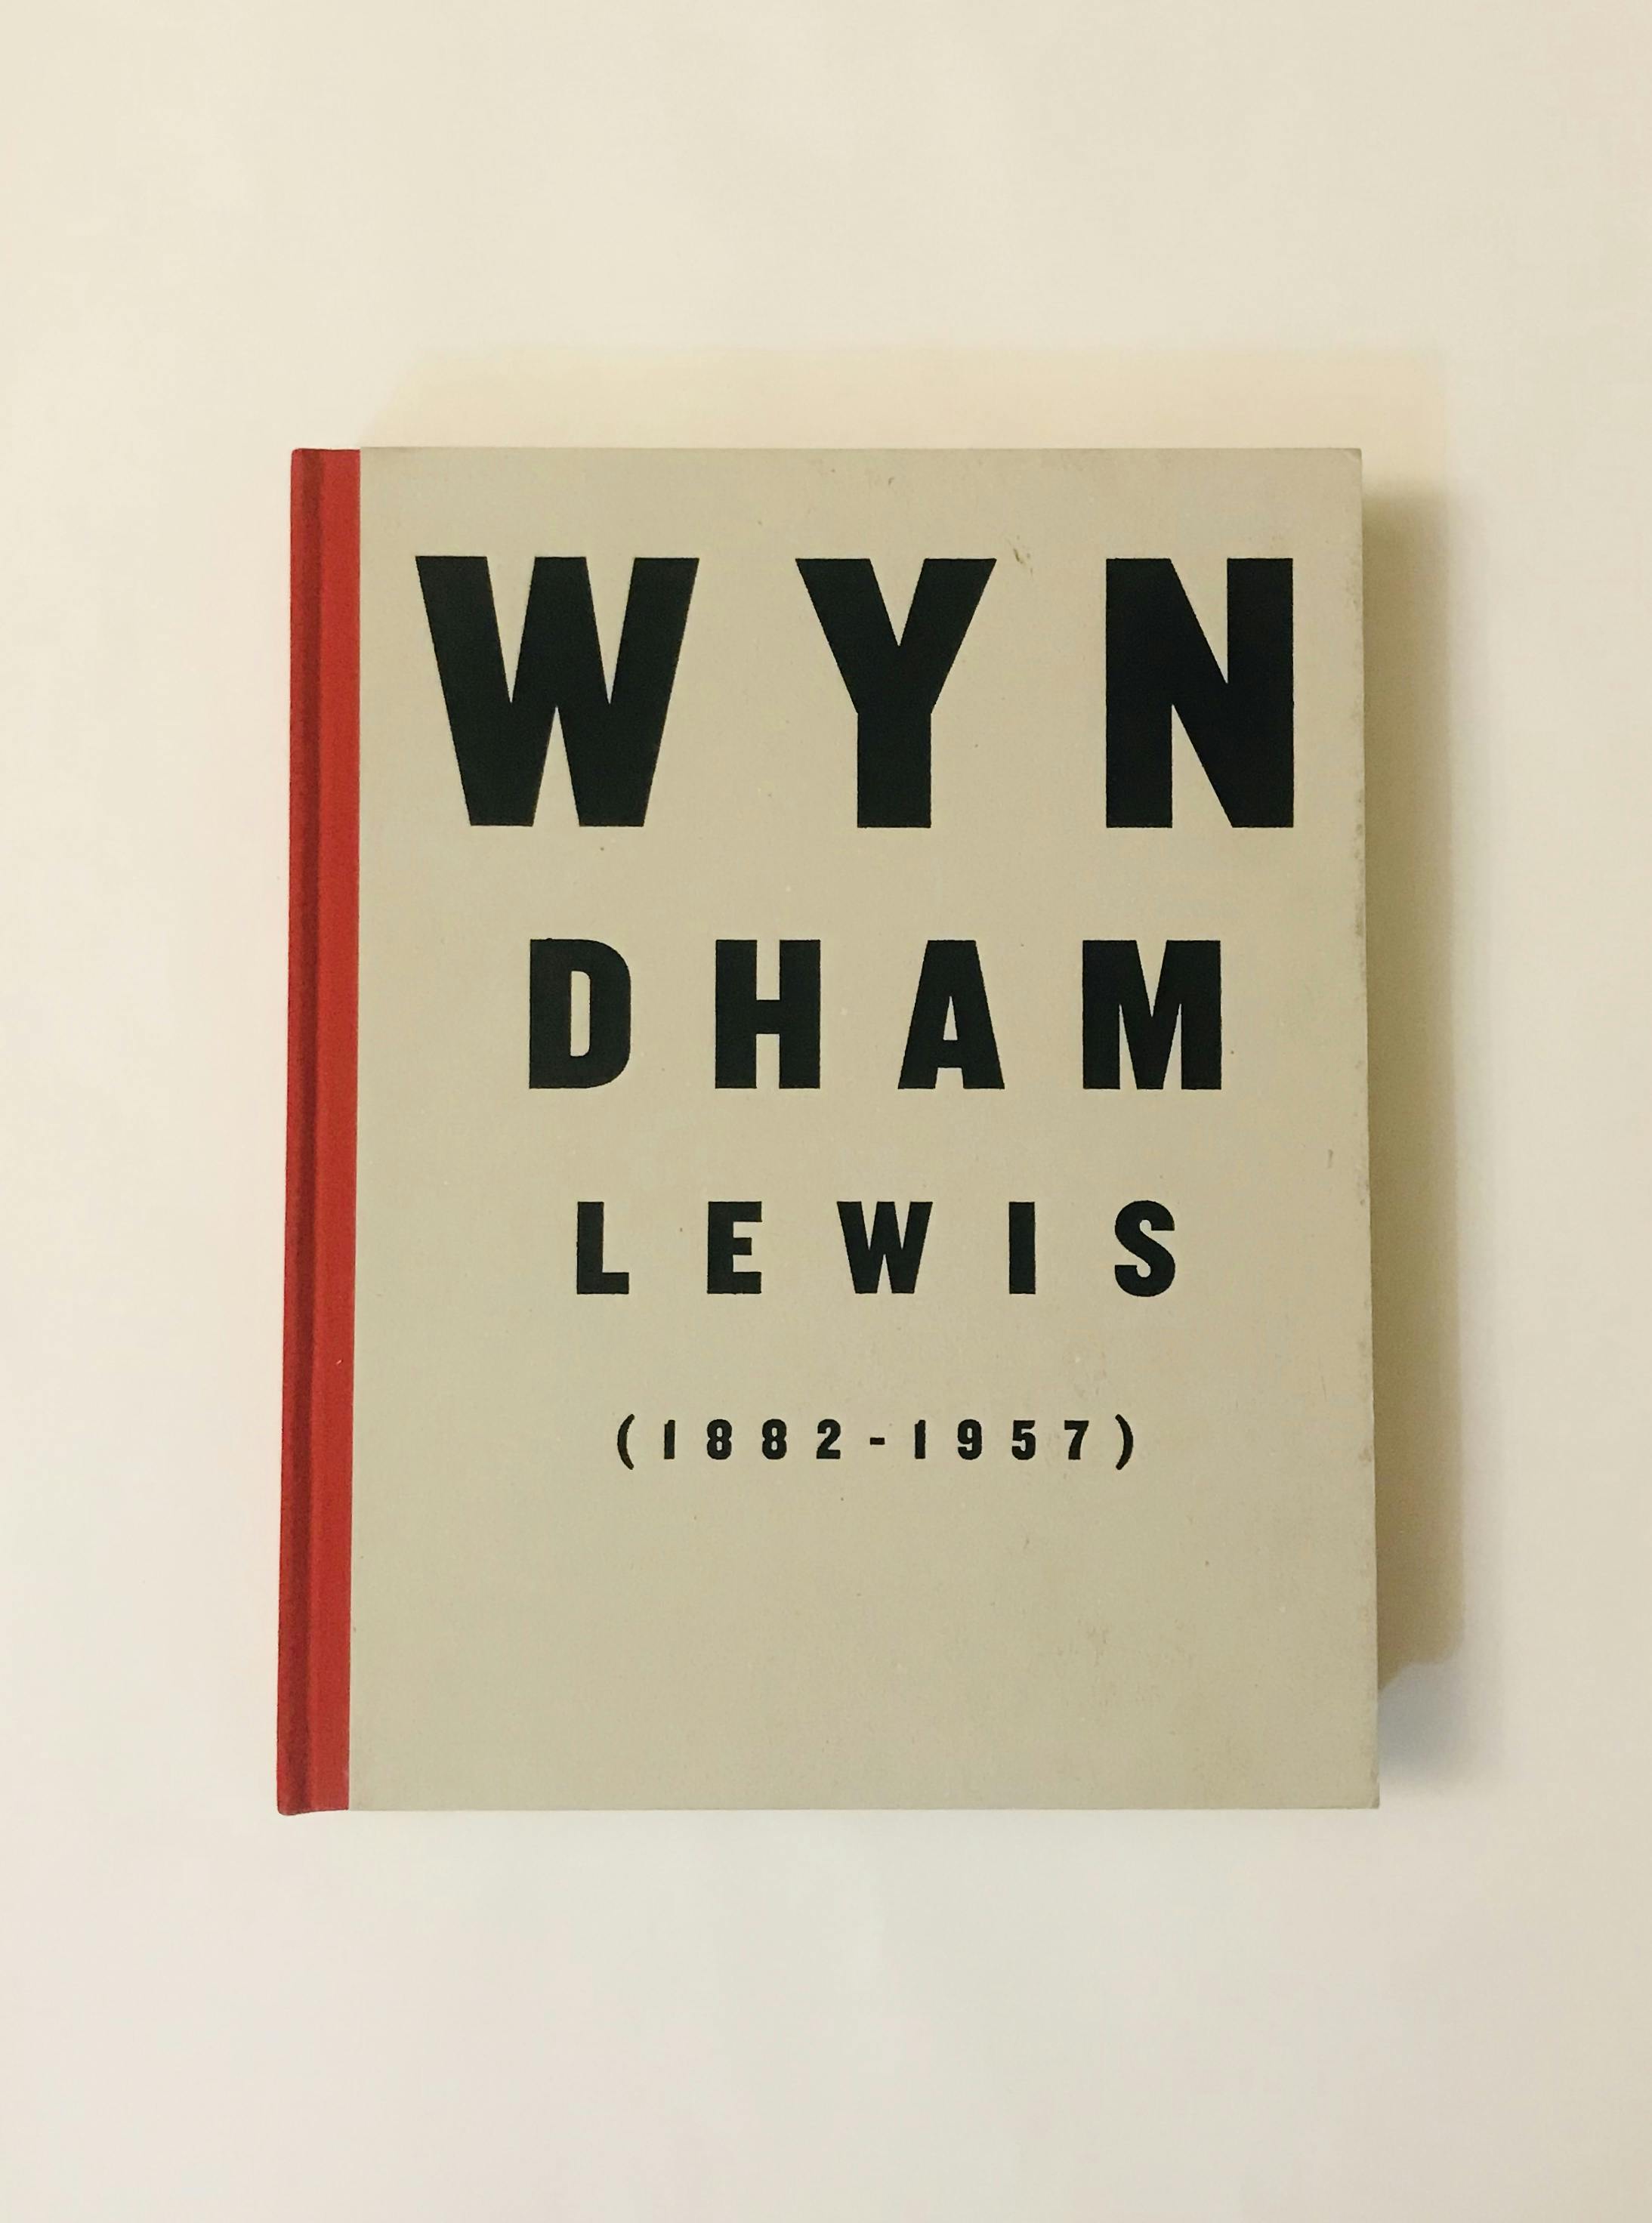 "WYNDHAM LEWIS (1882 - 1957)"